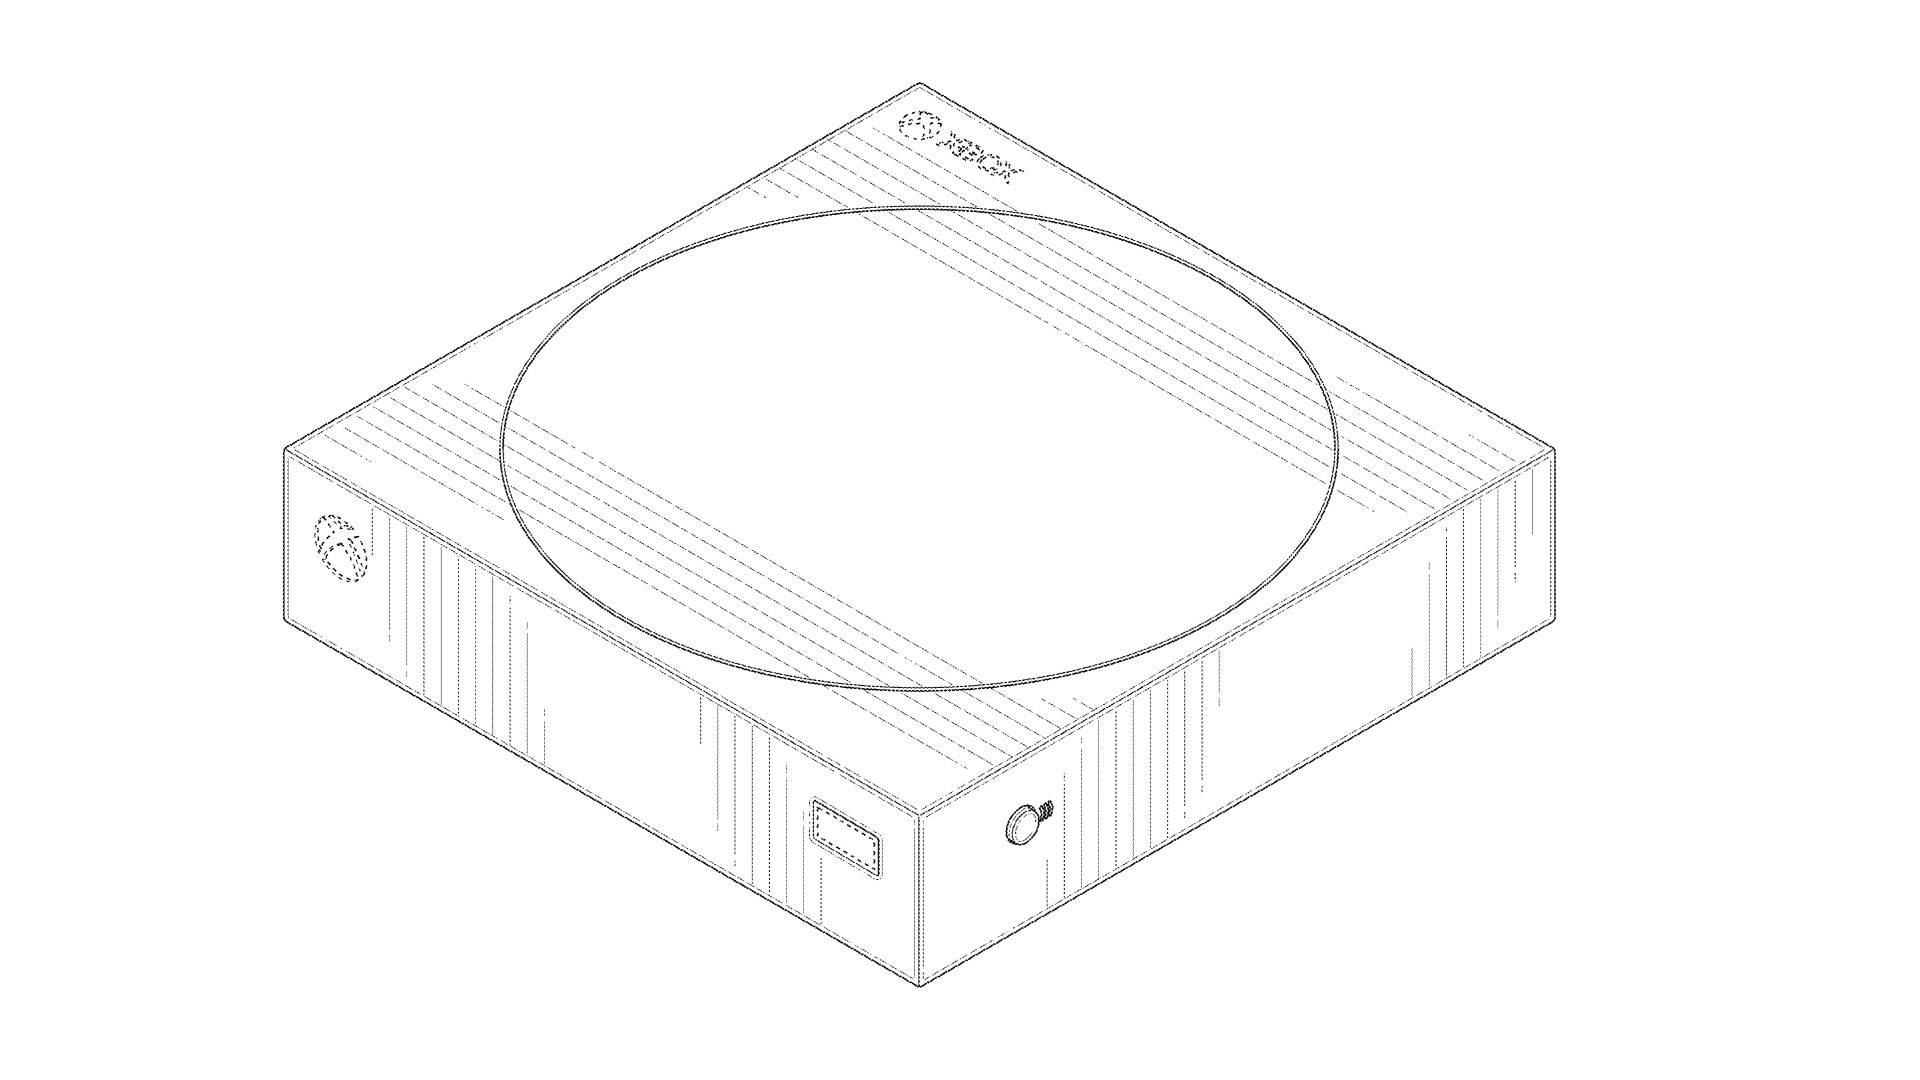 Zdjęcie ze zgłoszenia patentowego firmy Microsoft przedstawiające niewydaną konsolę Xbox w chmurze.